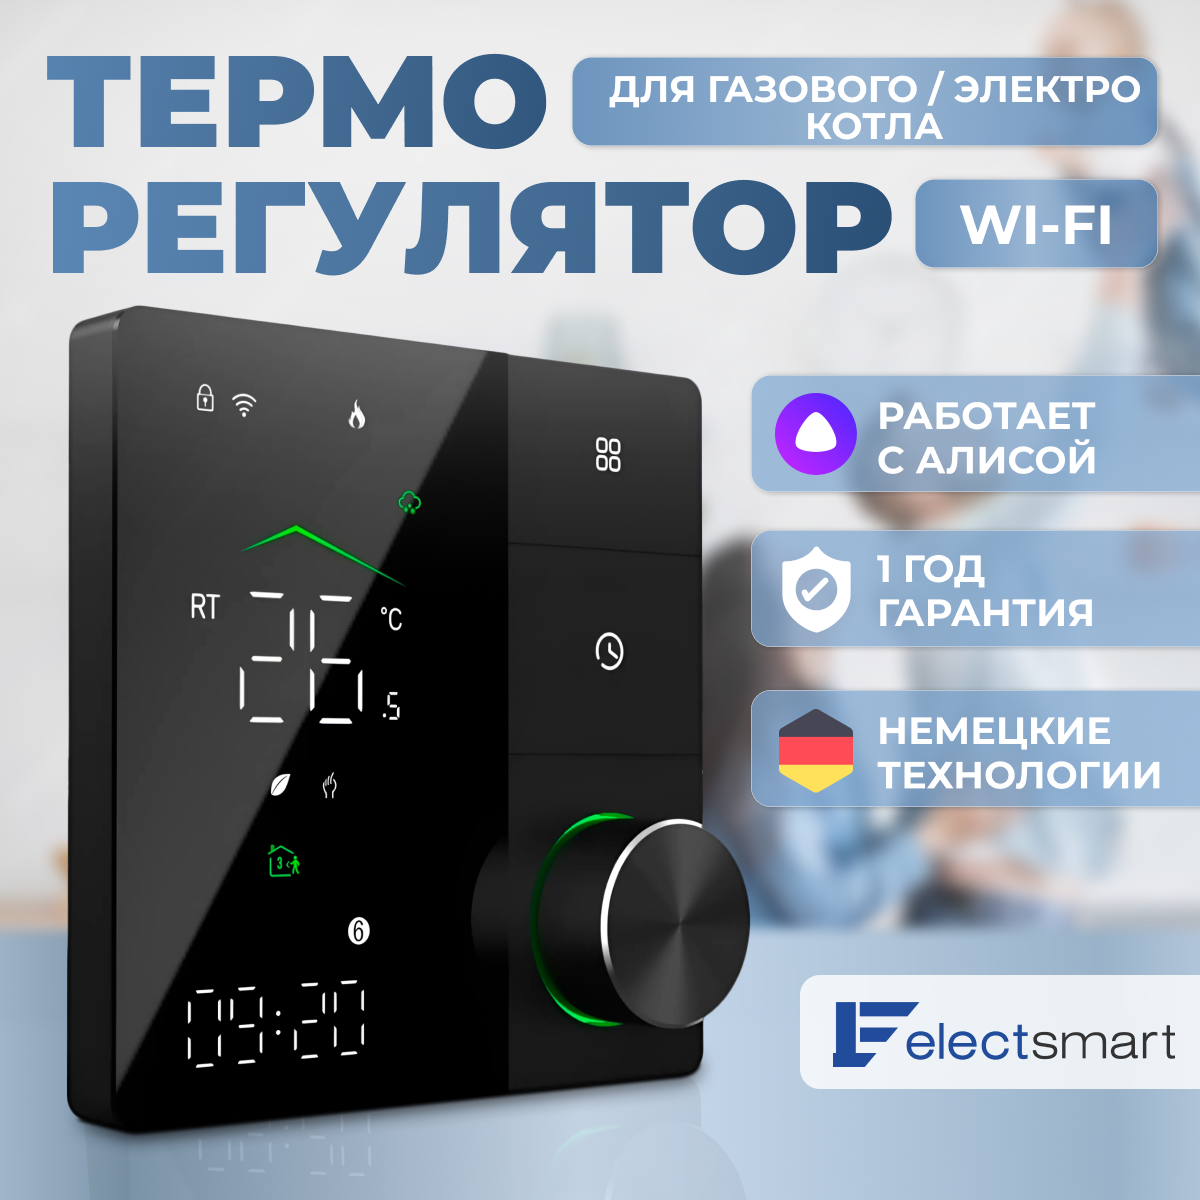 PRO-801W Терморегулятор для газового или электрического котла, программируемый термостат с WiFi , работает с Яндекс Алисой, цвет: белый. Сенсорный регулятор температуры, ELECTSMART